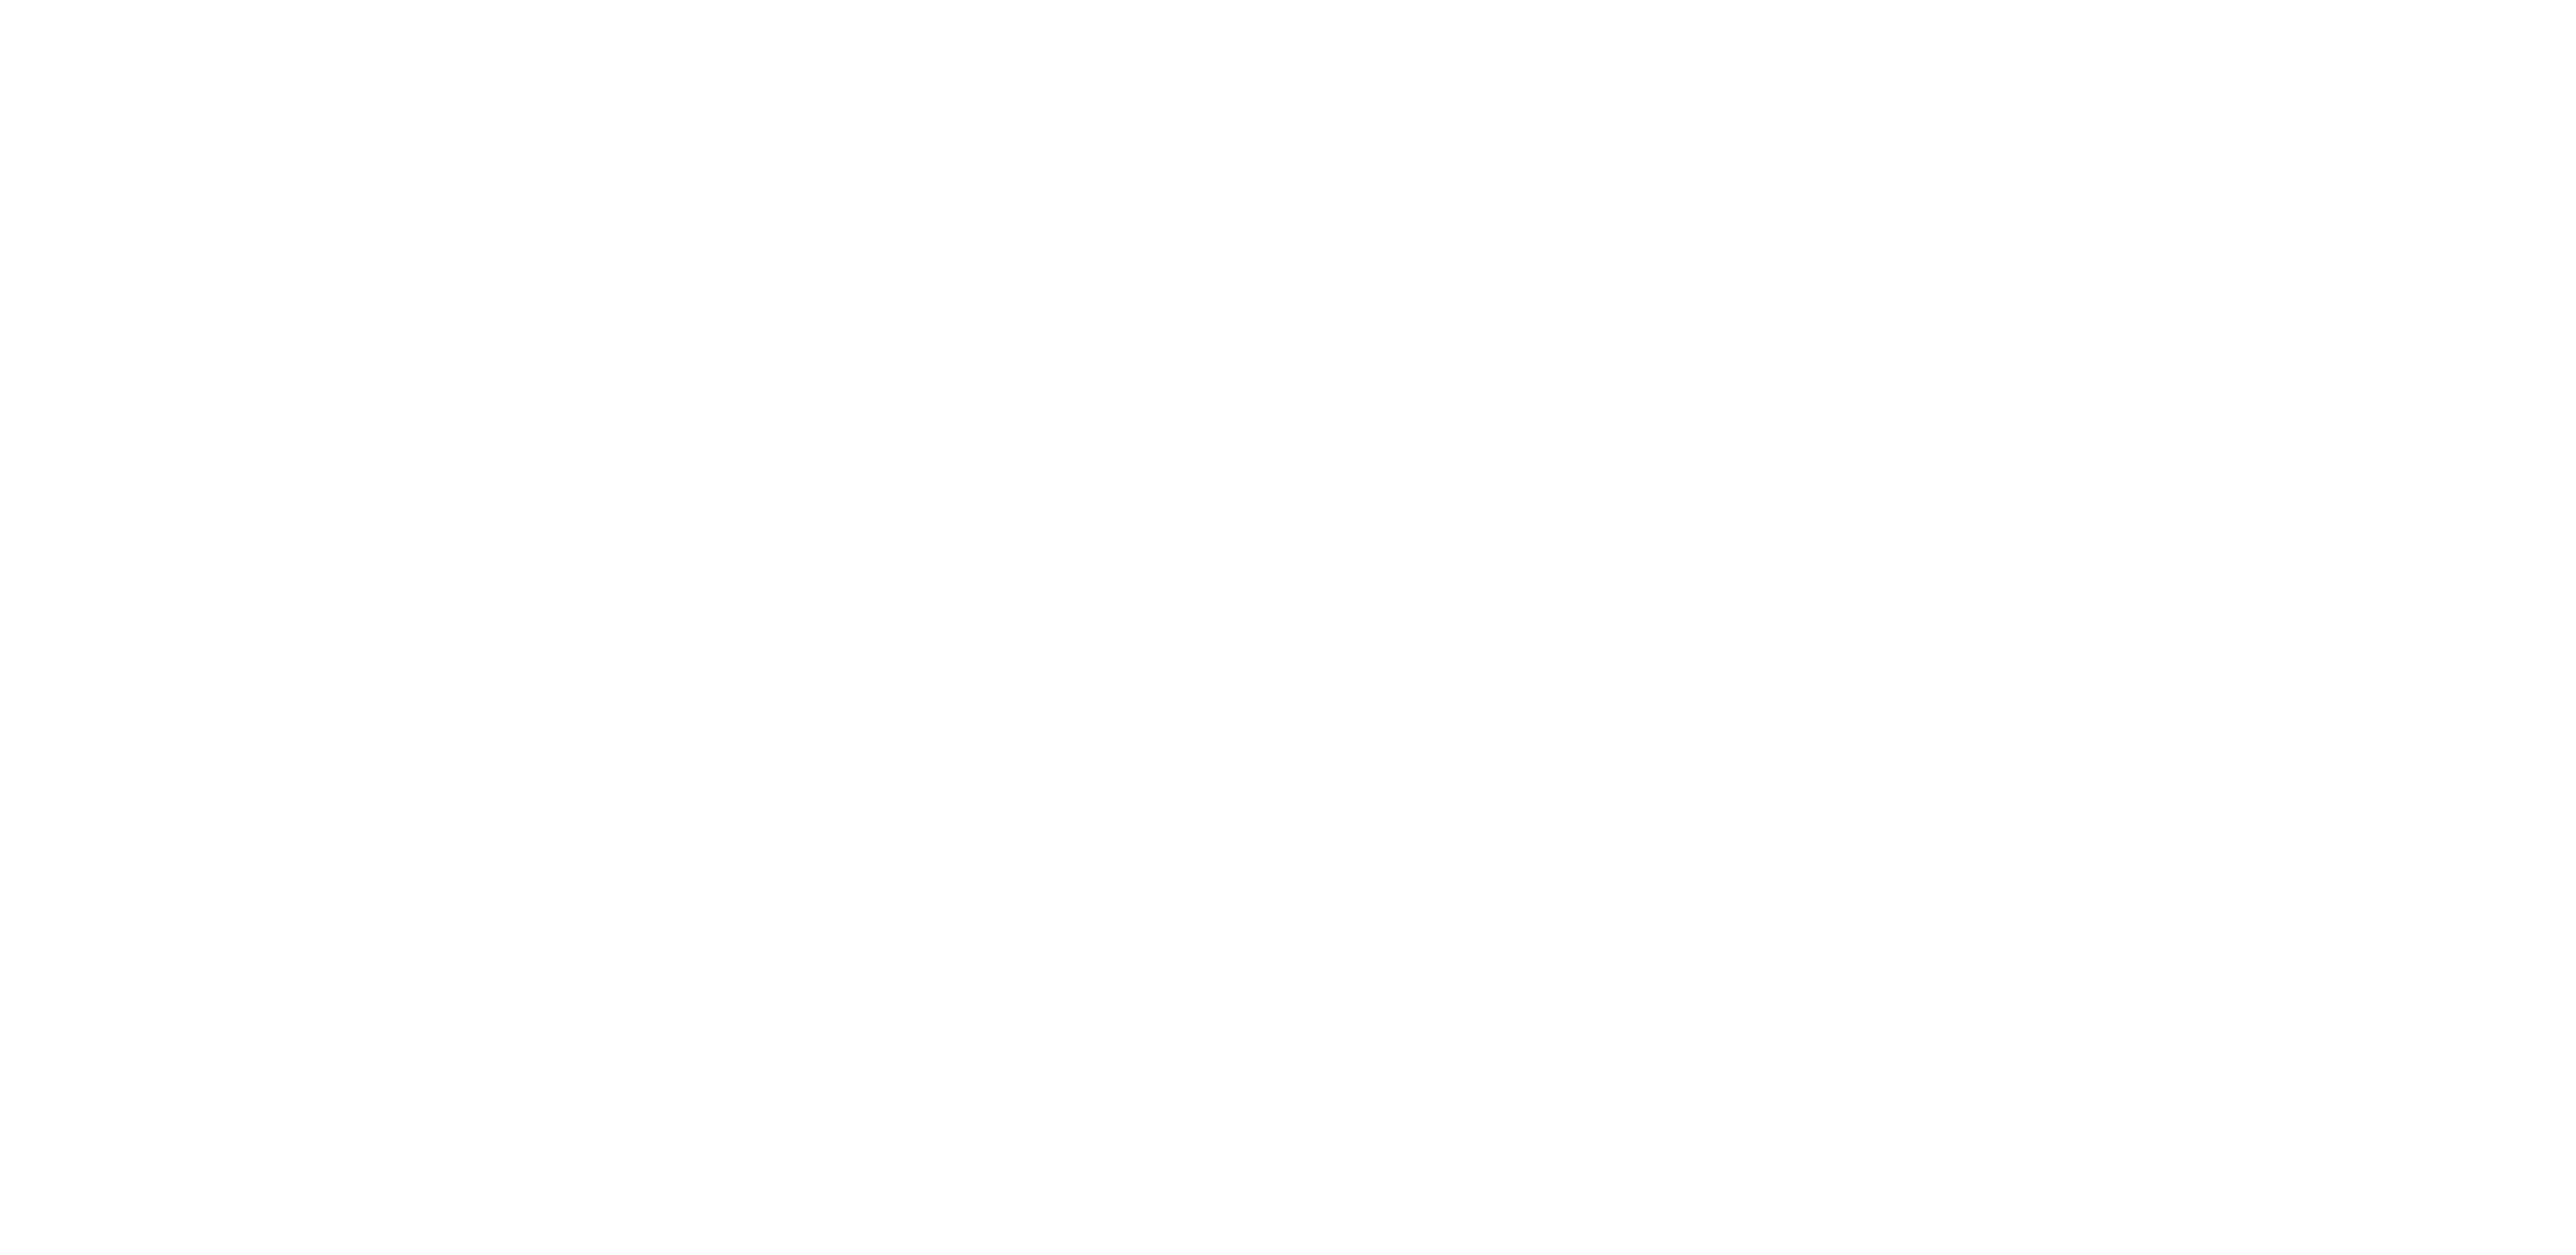 Gotham West